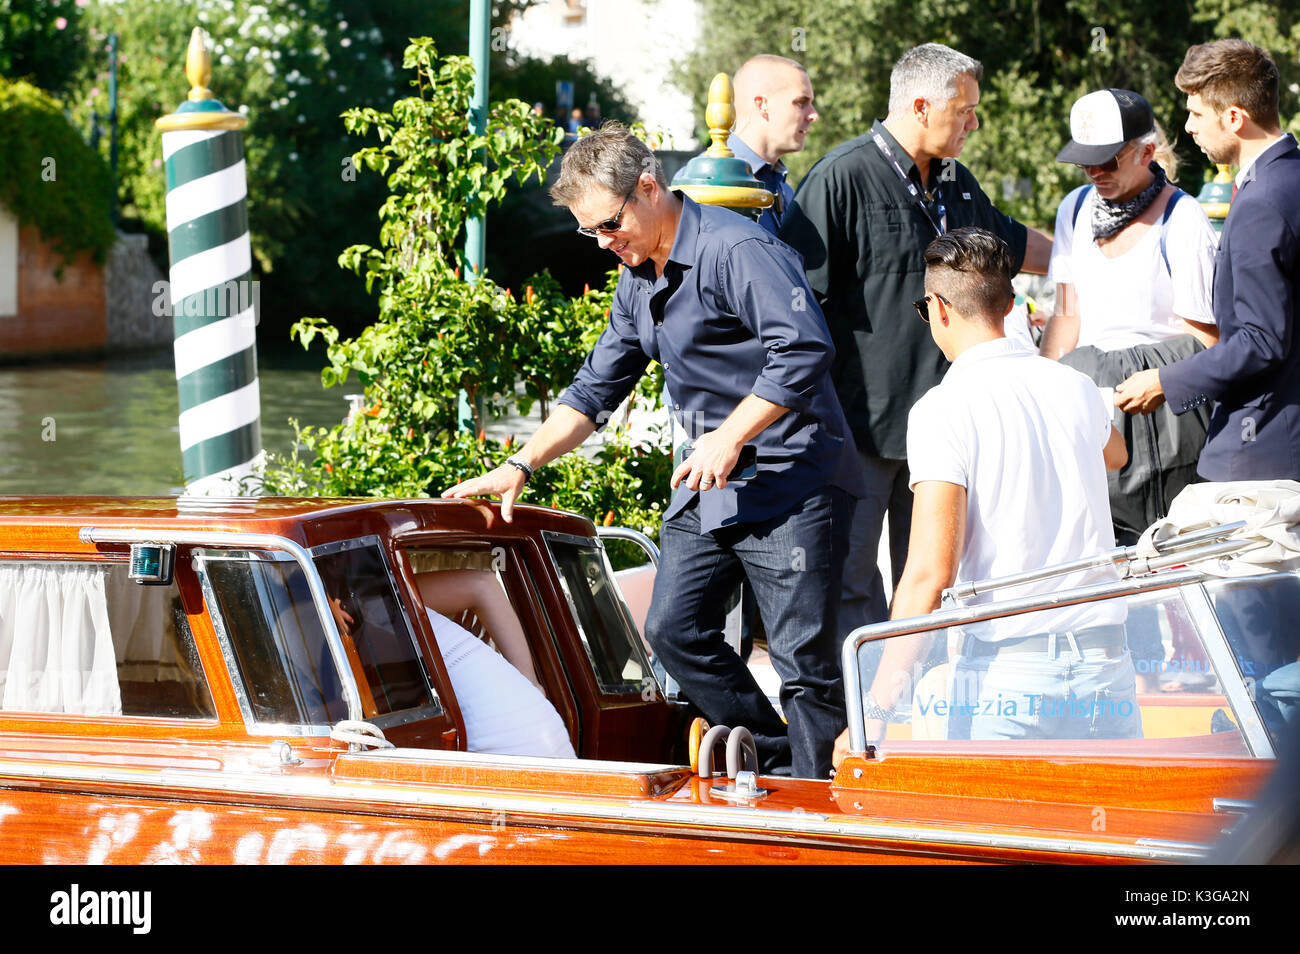 Matt Damon è visto lasciare l'hotel excelsior dopo concedere interviste durante la 74a Mostra del Cinema di Venezia il 01 settembre 2017 a Venezia, Italia Foto Stock